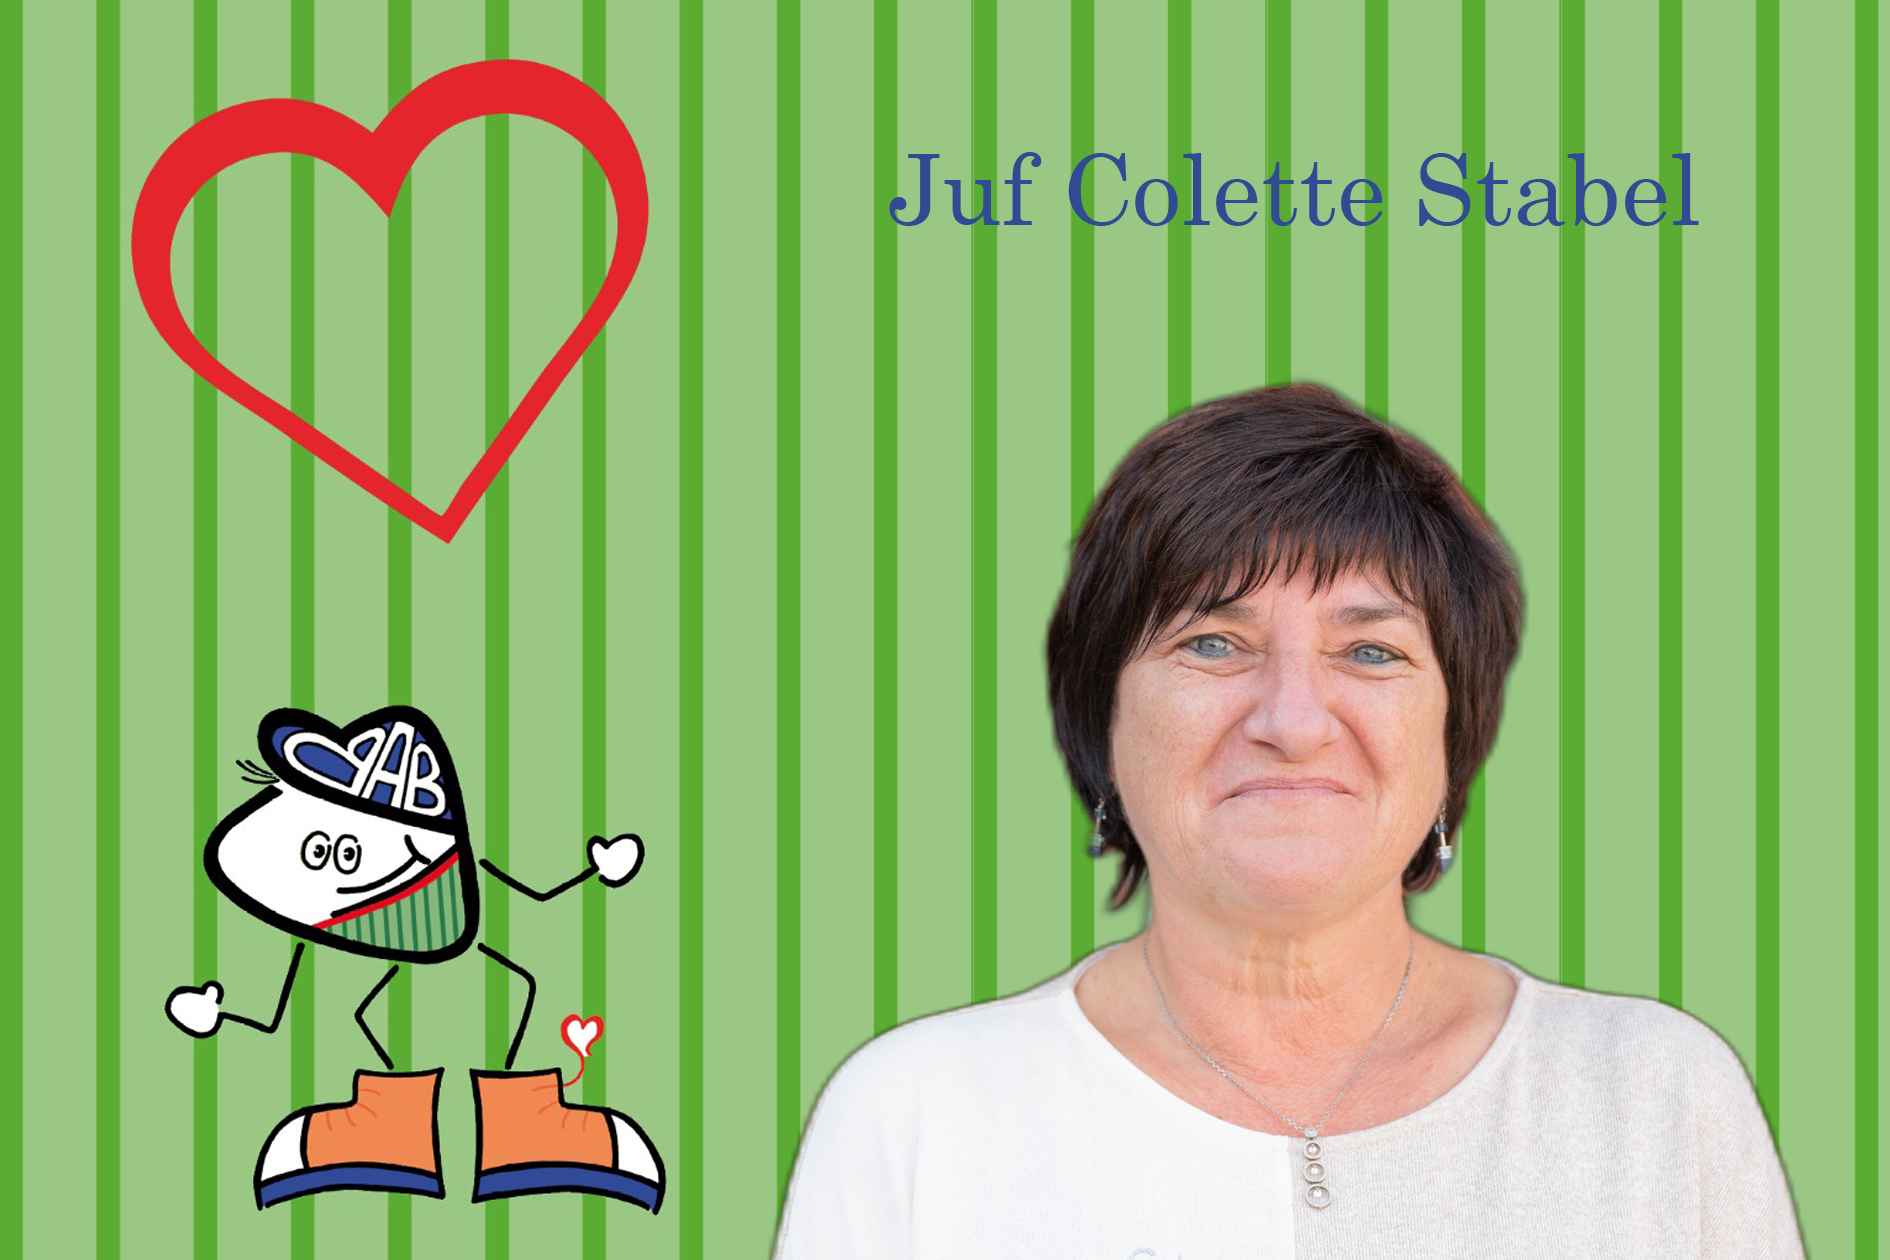 Colette Stabel